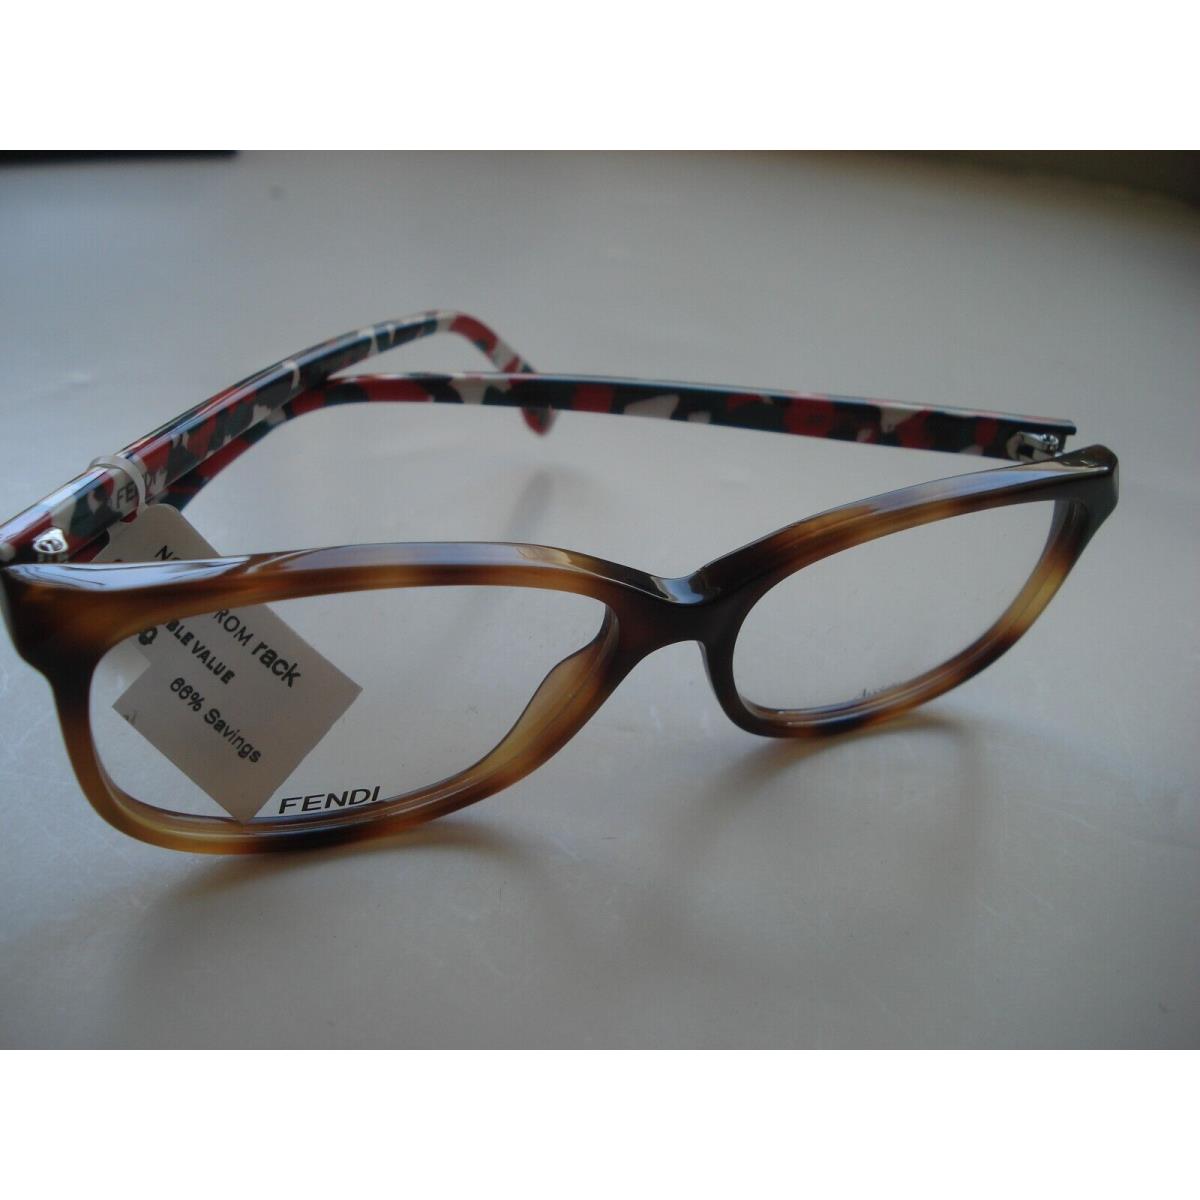 Fendi eyeglasses TTR - Brown Frame 4